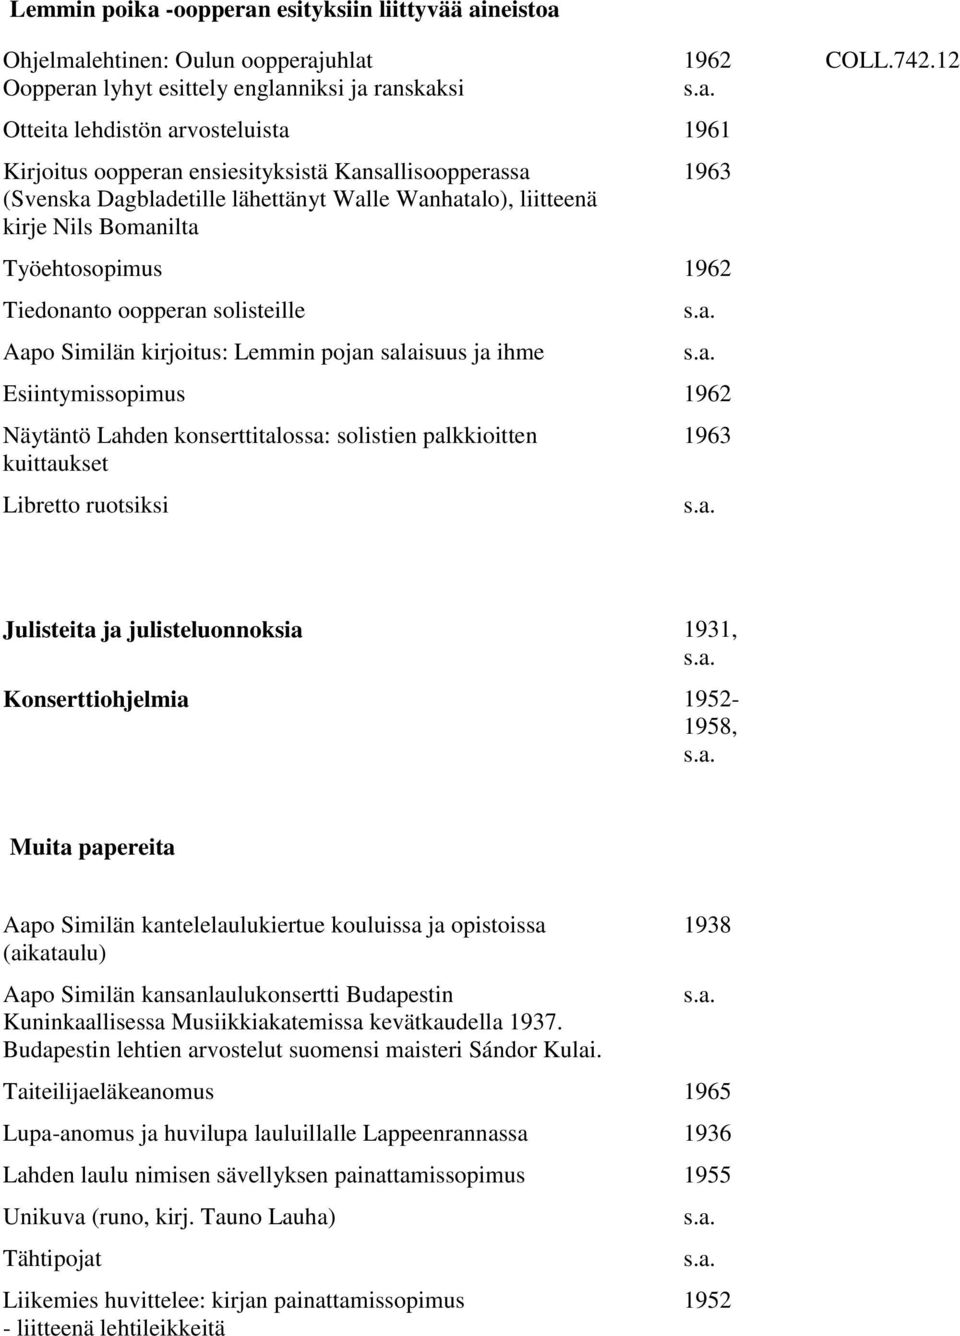 kirjoitus: Lemmin pojan salaisuus ja ihme Esiintymissopimus 1962 Näytäntö Lahden konserttitalossa: solistien palkkioitten kuittaukset Libretto ruotsiksi 1963 COLL.742.